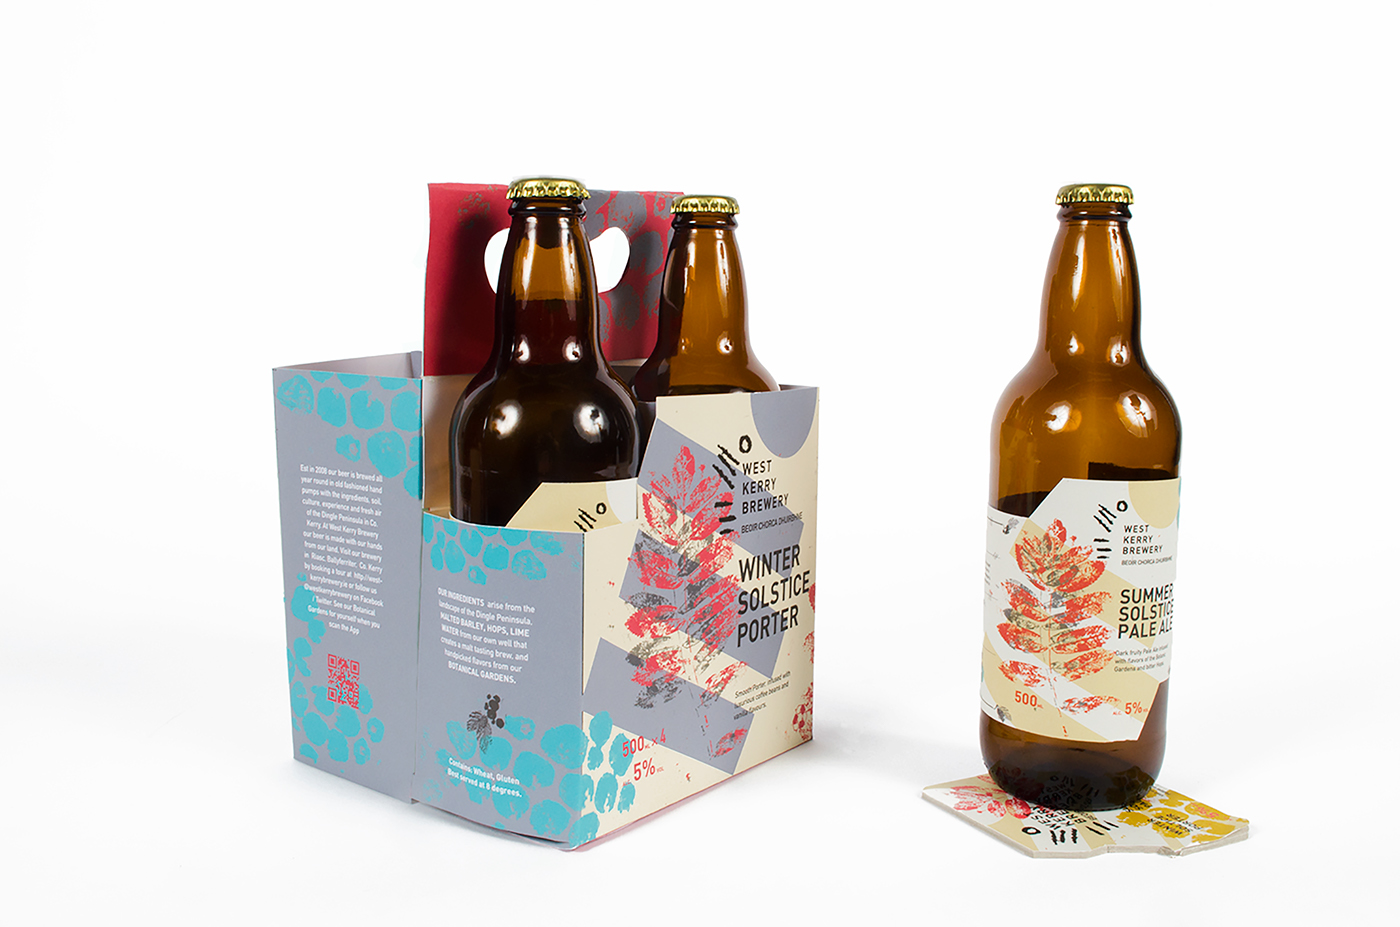 craftbeer brandingdesign packagingdesign design Rebrand labels beerbottle irishdesign student